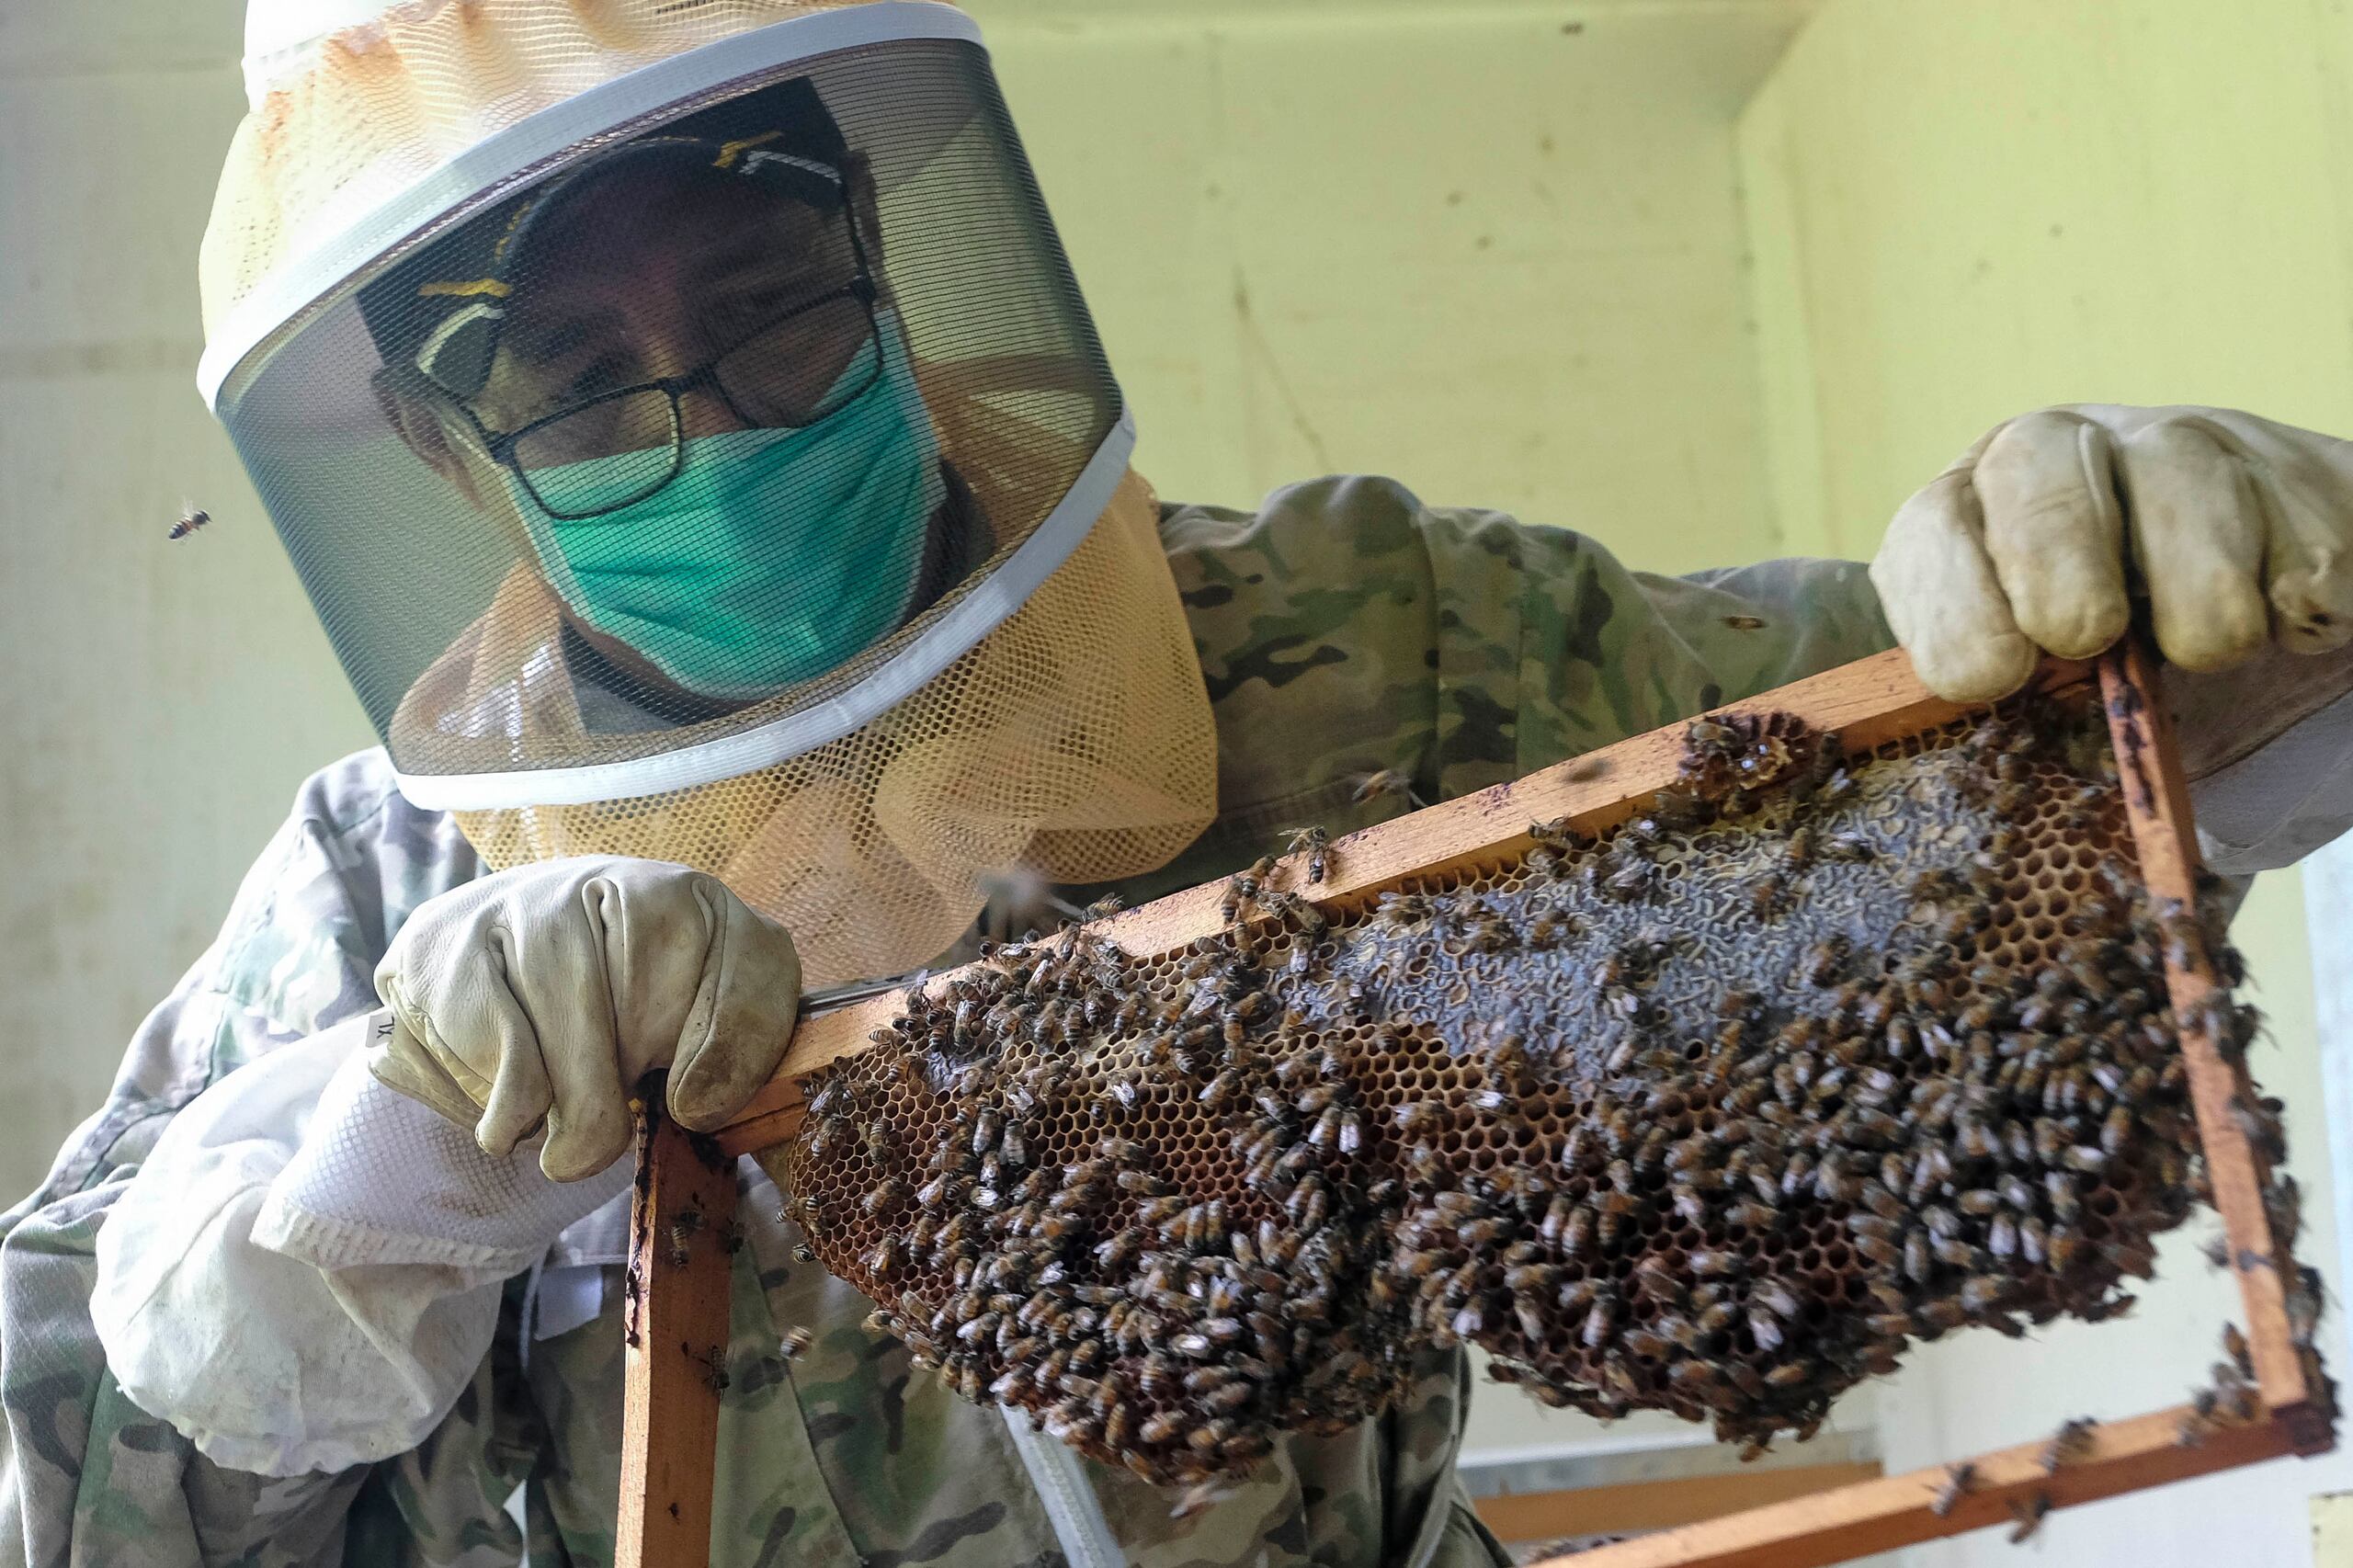 El apicultor Hermes Conde explica que este año se perfila como el del más grande colapso de abejas en Puerto Rico, pues prácticamente "aquí no hubo primavera", lo que limitó el florecimiento de las plantas y, por ende, la polinización.